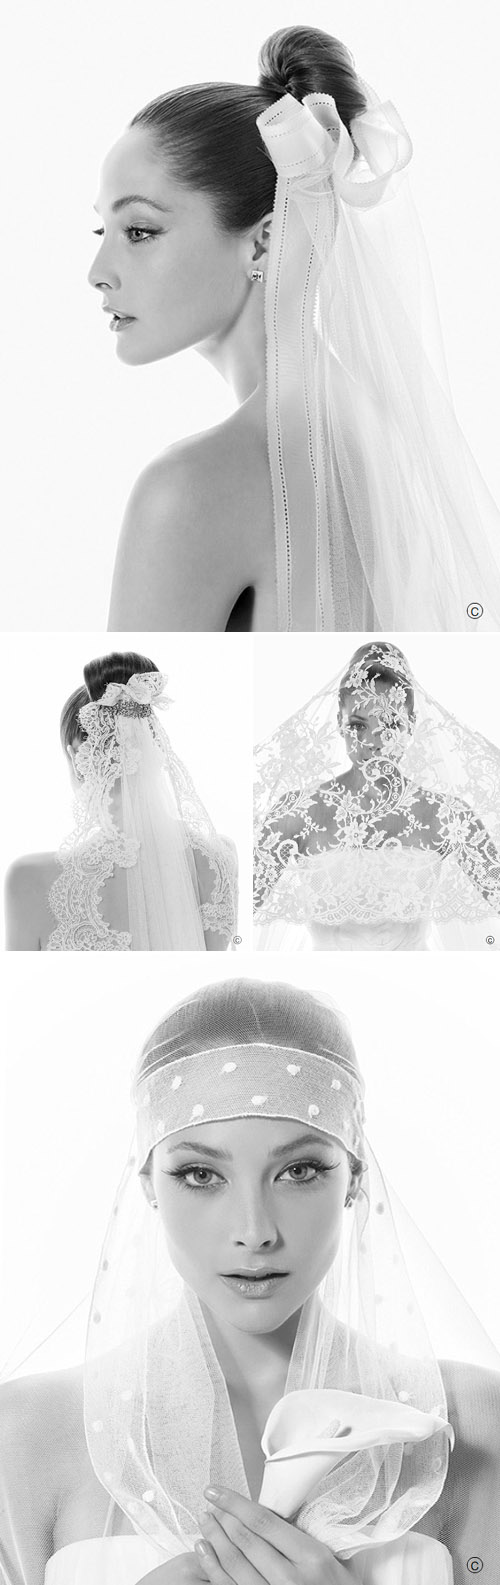 http://junebugweddings.com/img/whatjunebugloves/june2010/rosa-clara-bridal-mantilla-veils-2.jpg